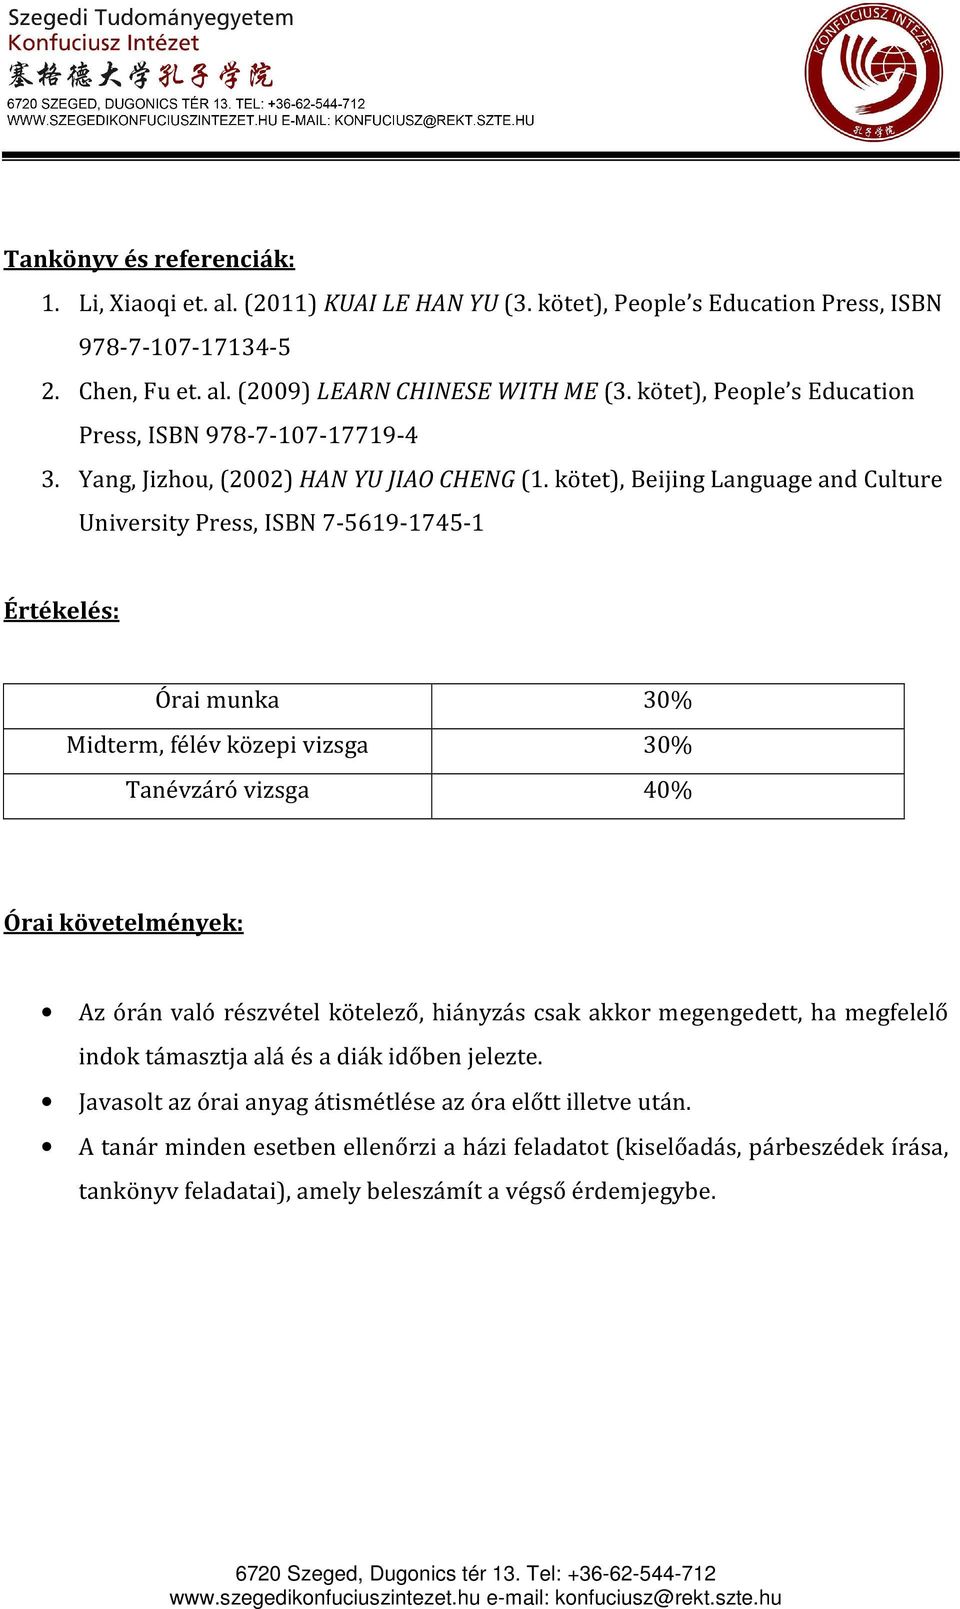 kötet), Beijing Language and Culture University Press, ISBN 7-5619-1745-1 Értékelés: Órai munka 30% Midterm, félév közepi vizsga 30% Tanévzáró vizsga 40% Órai követelmények: Az órán való részvétel